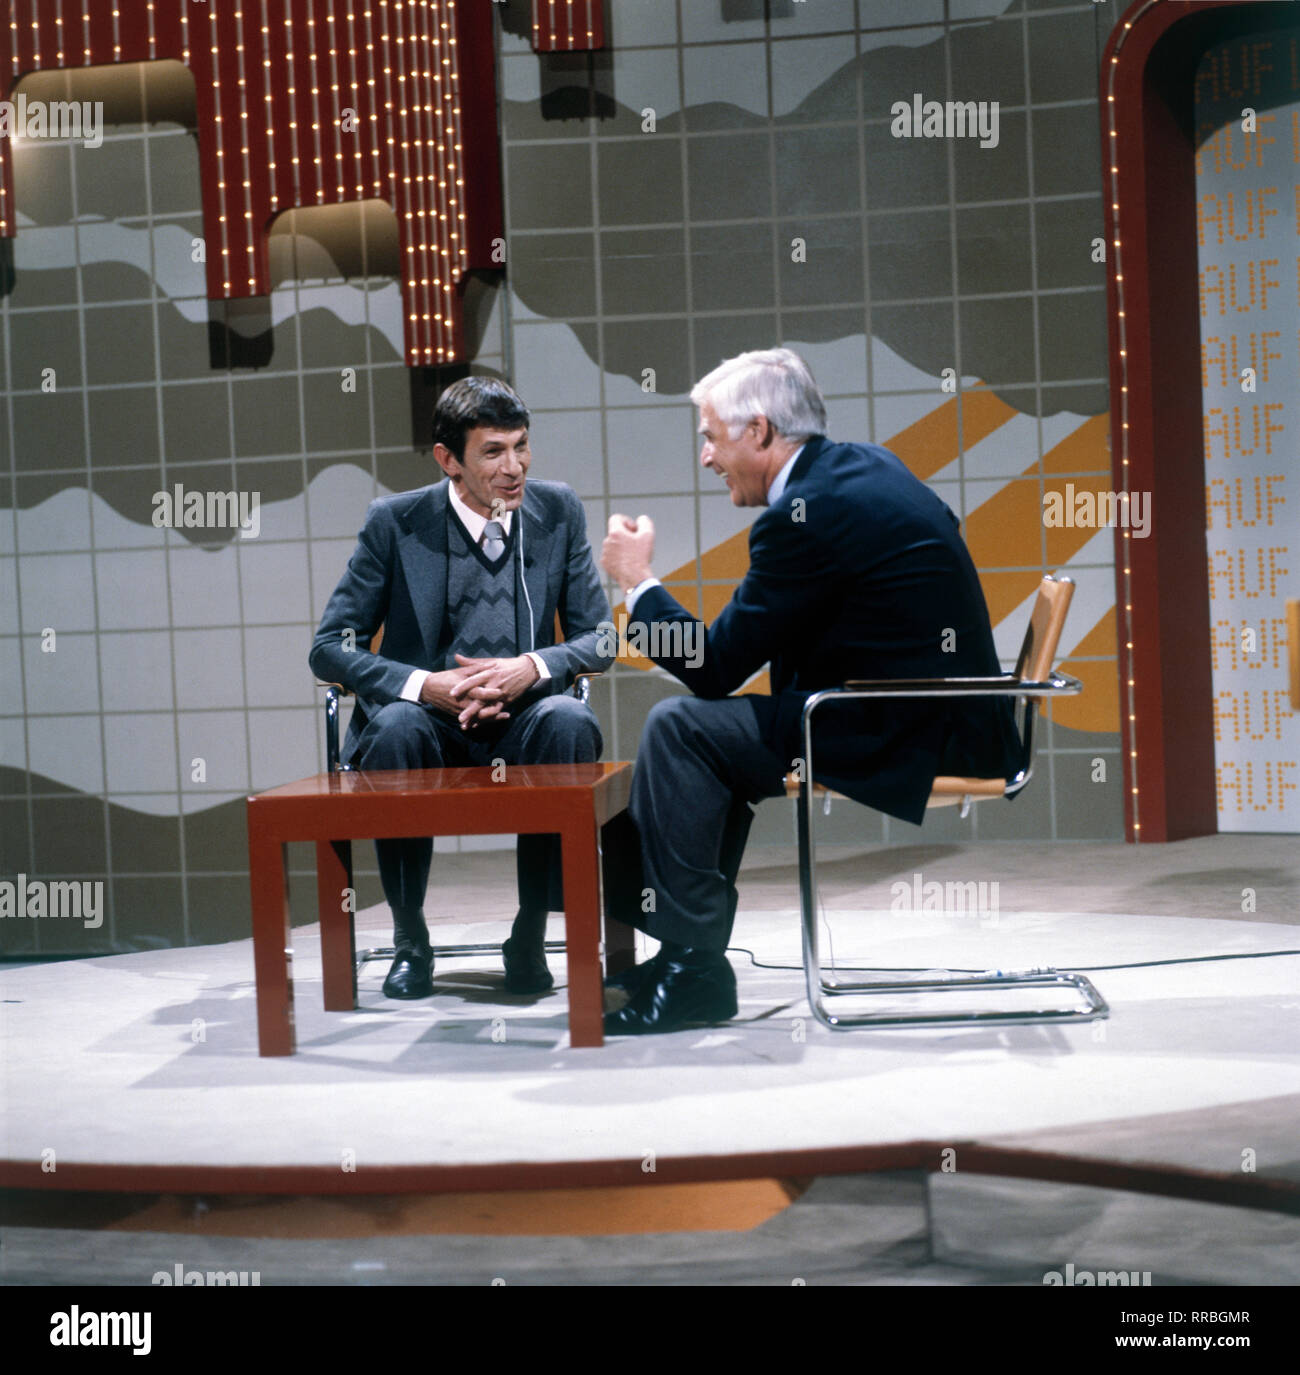 AUF LOS GEHT'S LOS / Stargast: LEONARD NIMOY 'Mr. Spock' mit JOACHIM FUCHSBERGER, Moderator der ARD-Fernsehshow: Auf los gehts los (1980er). 30769 / Überschrift: AUF LOS GEHT'S LOS Stock Photo